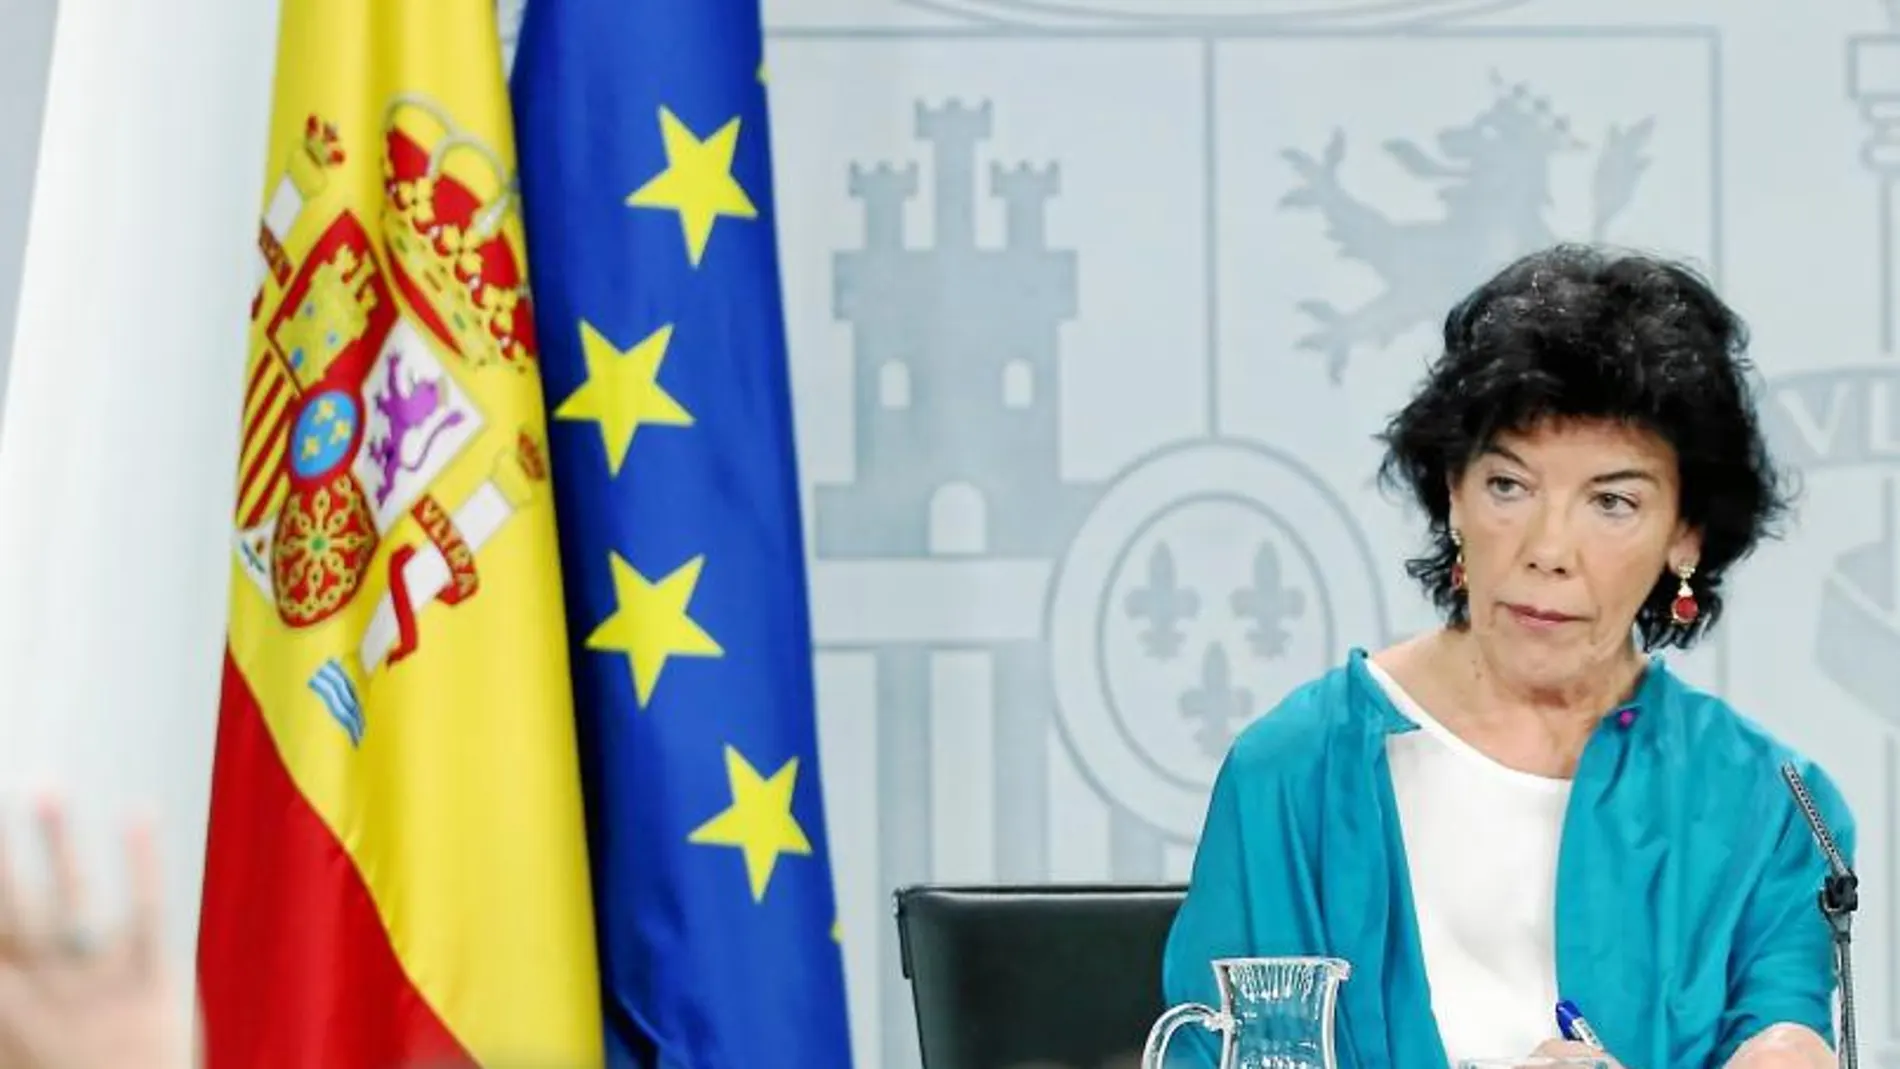 La ministra portavoz Isabel Celaá durante una rueda de prensa en Moncloa tras el Consejo de Ministros / Cristina Bejarano